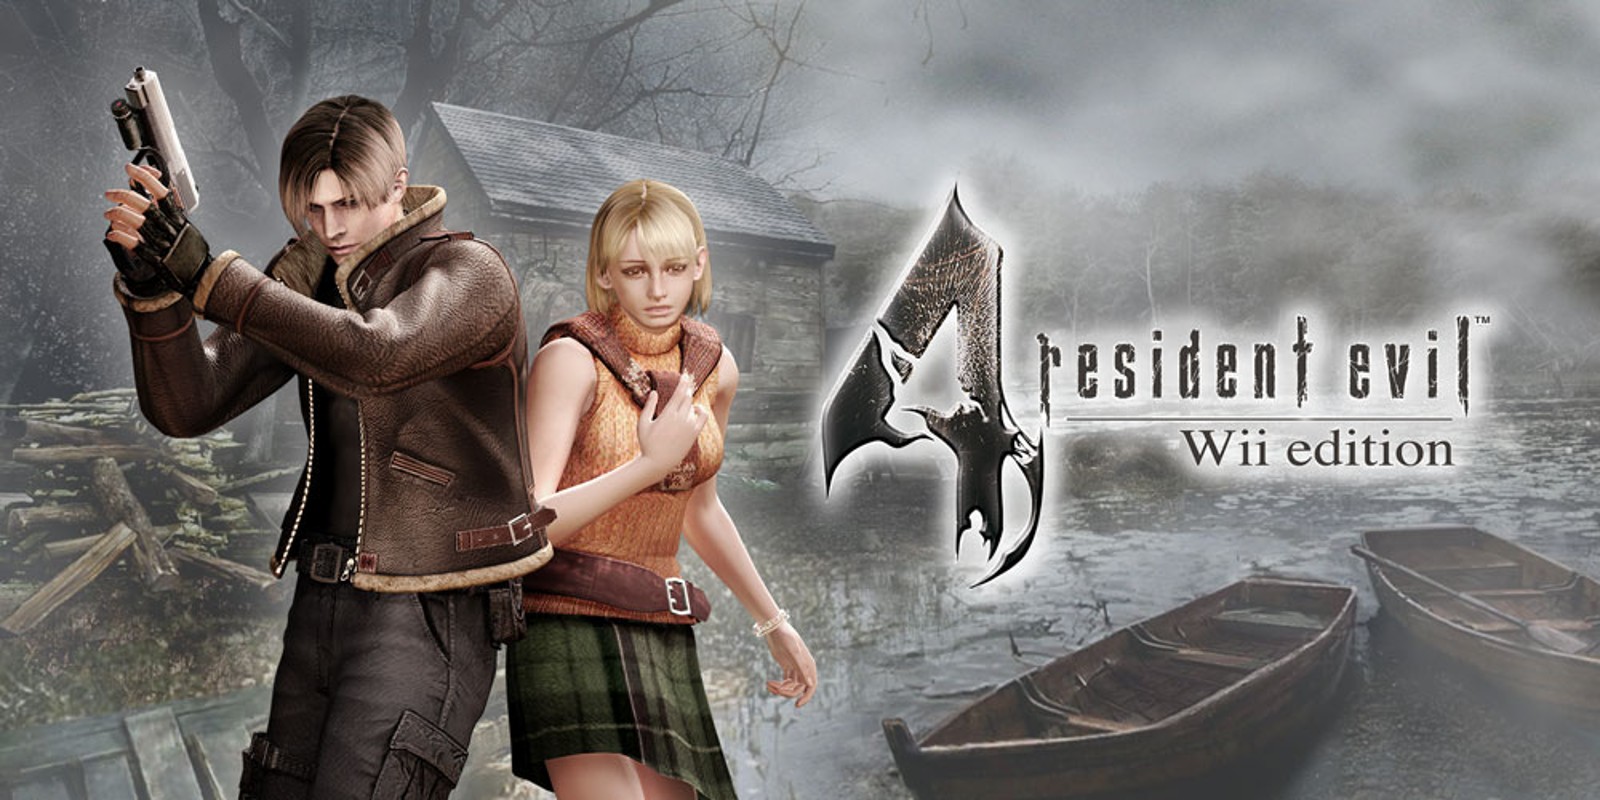 Прохождение игры Resident Evil 4 - Ultimate HD Edition # 27 (Русская версия игры) PC - Ver. HD Full.